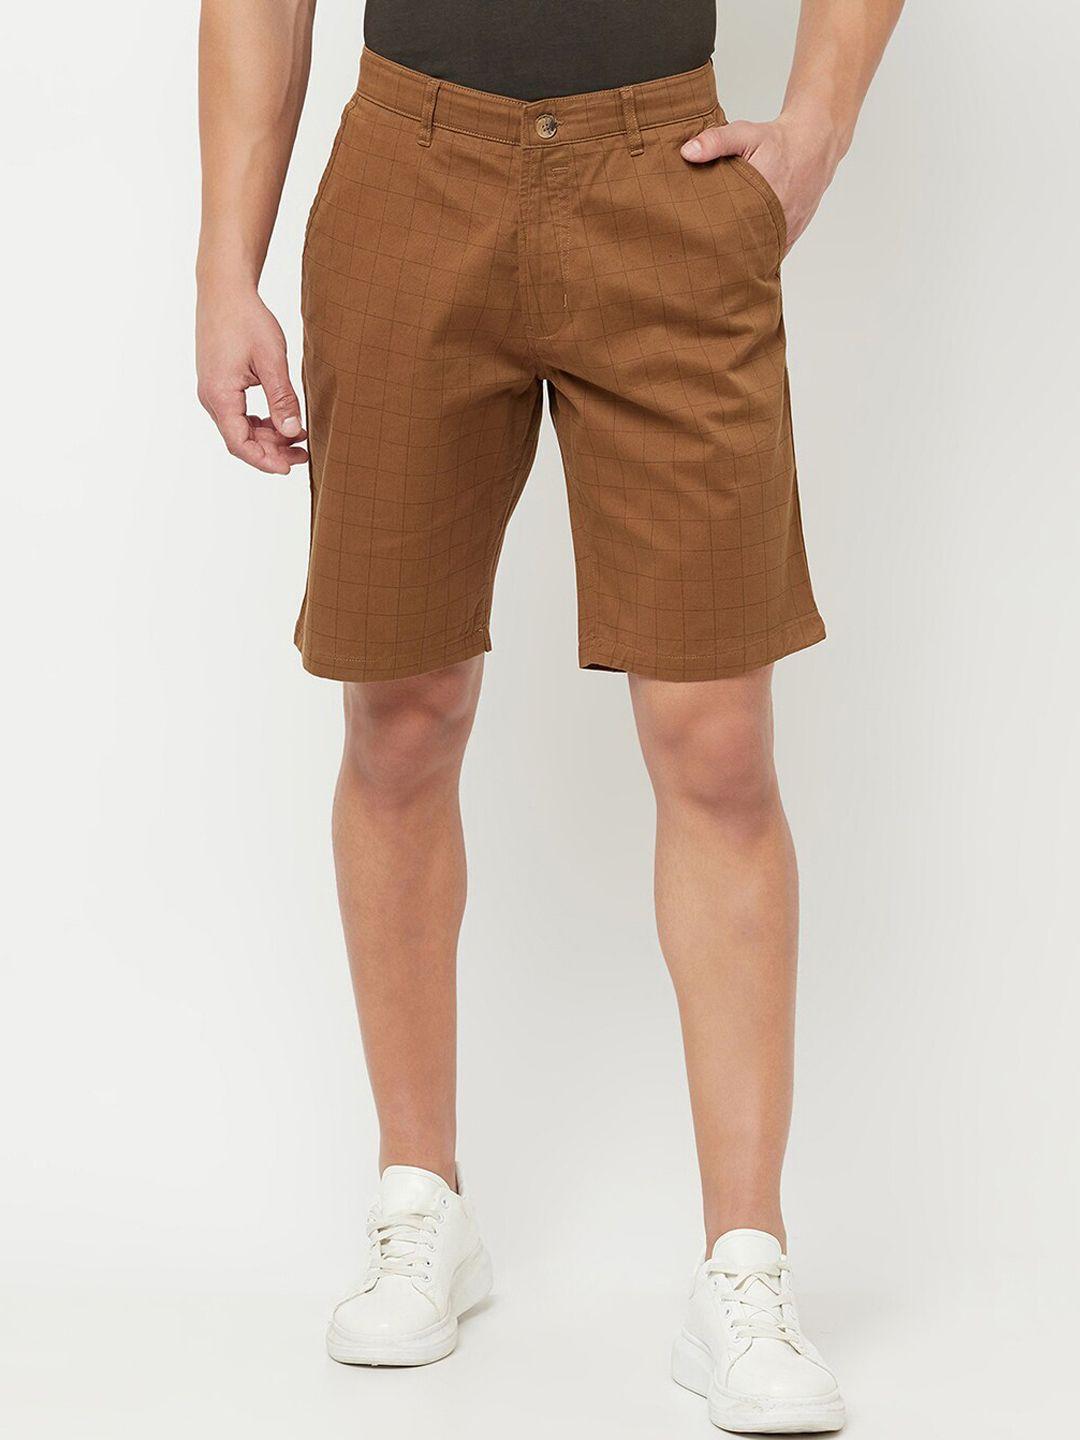 cantabil-men-brown-chino-shorts